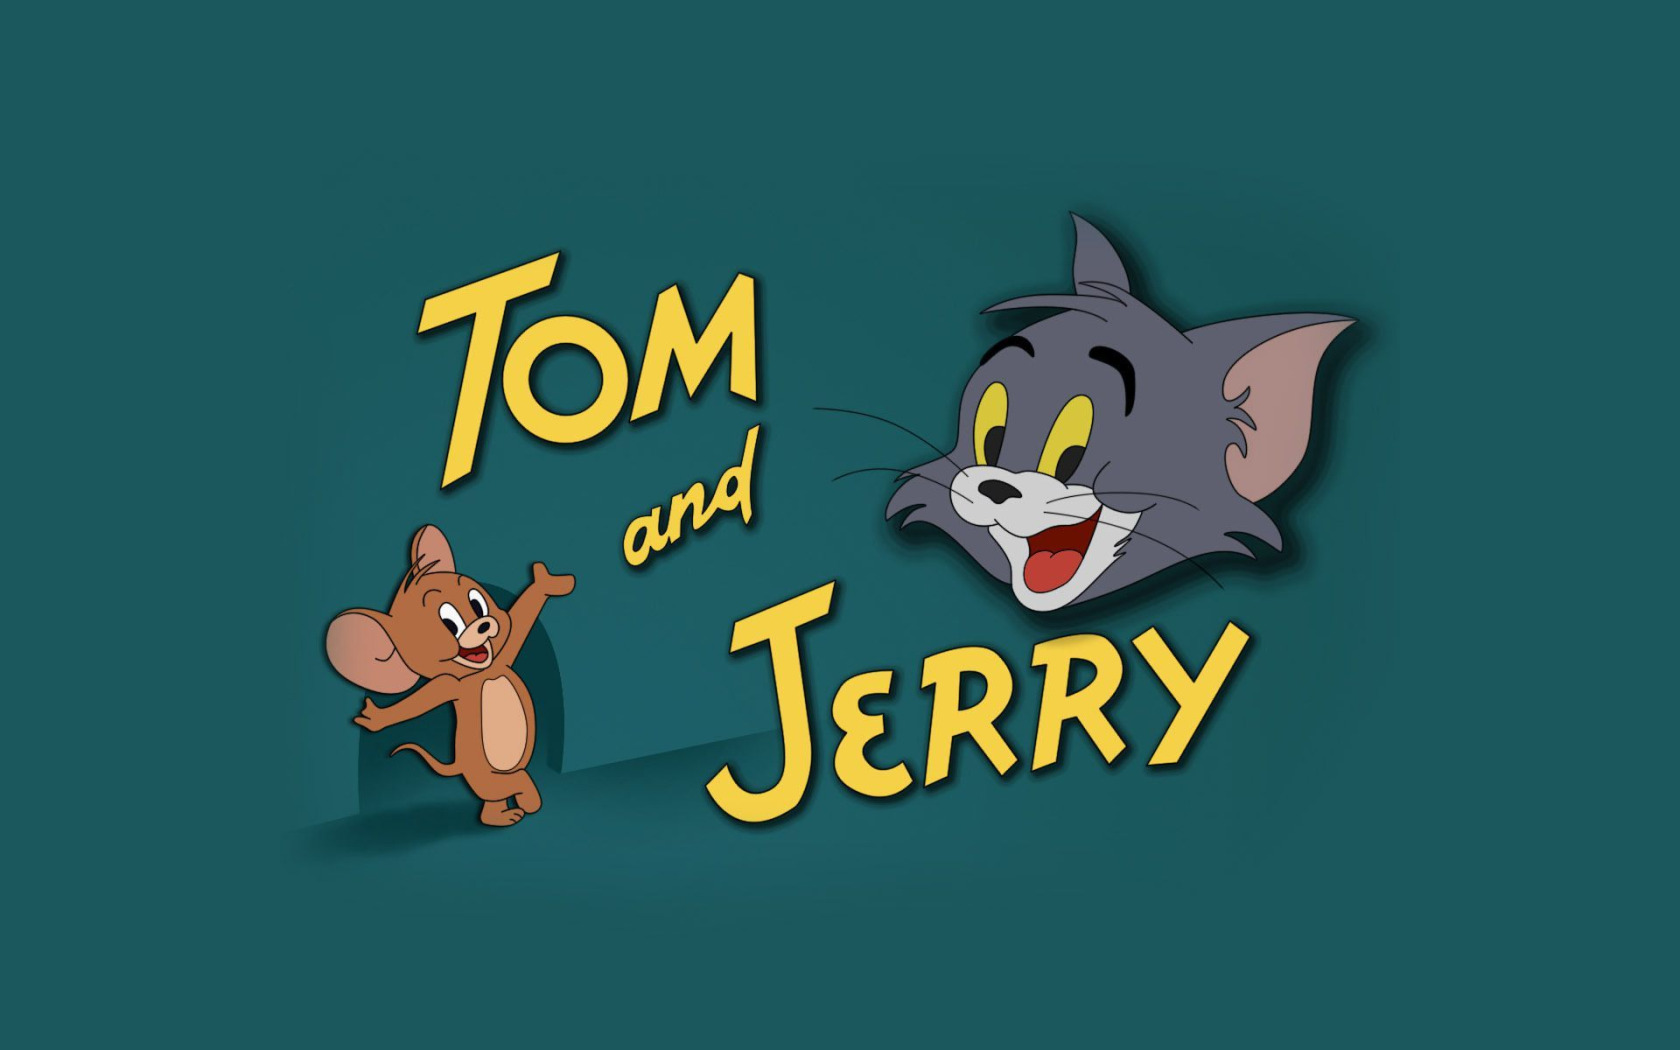 Обои для рабочего стола. кот, фон, мышь, Том и Джерри, Tom and Jerry. 